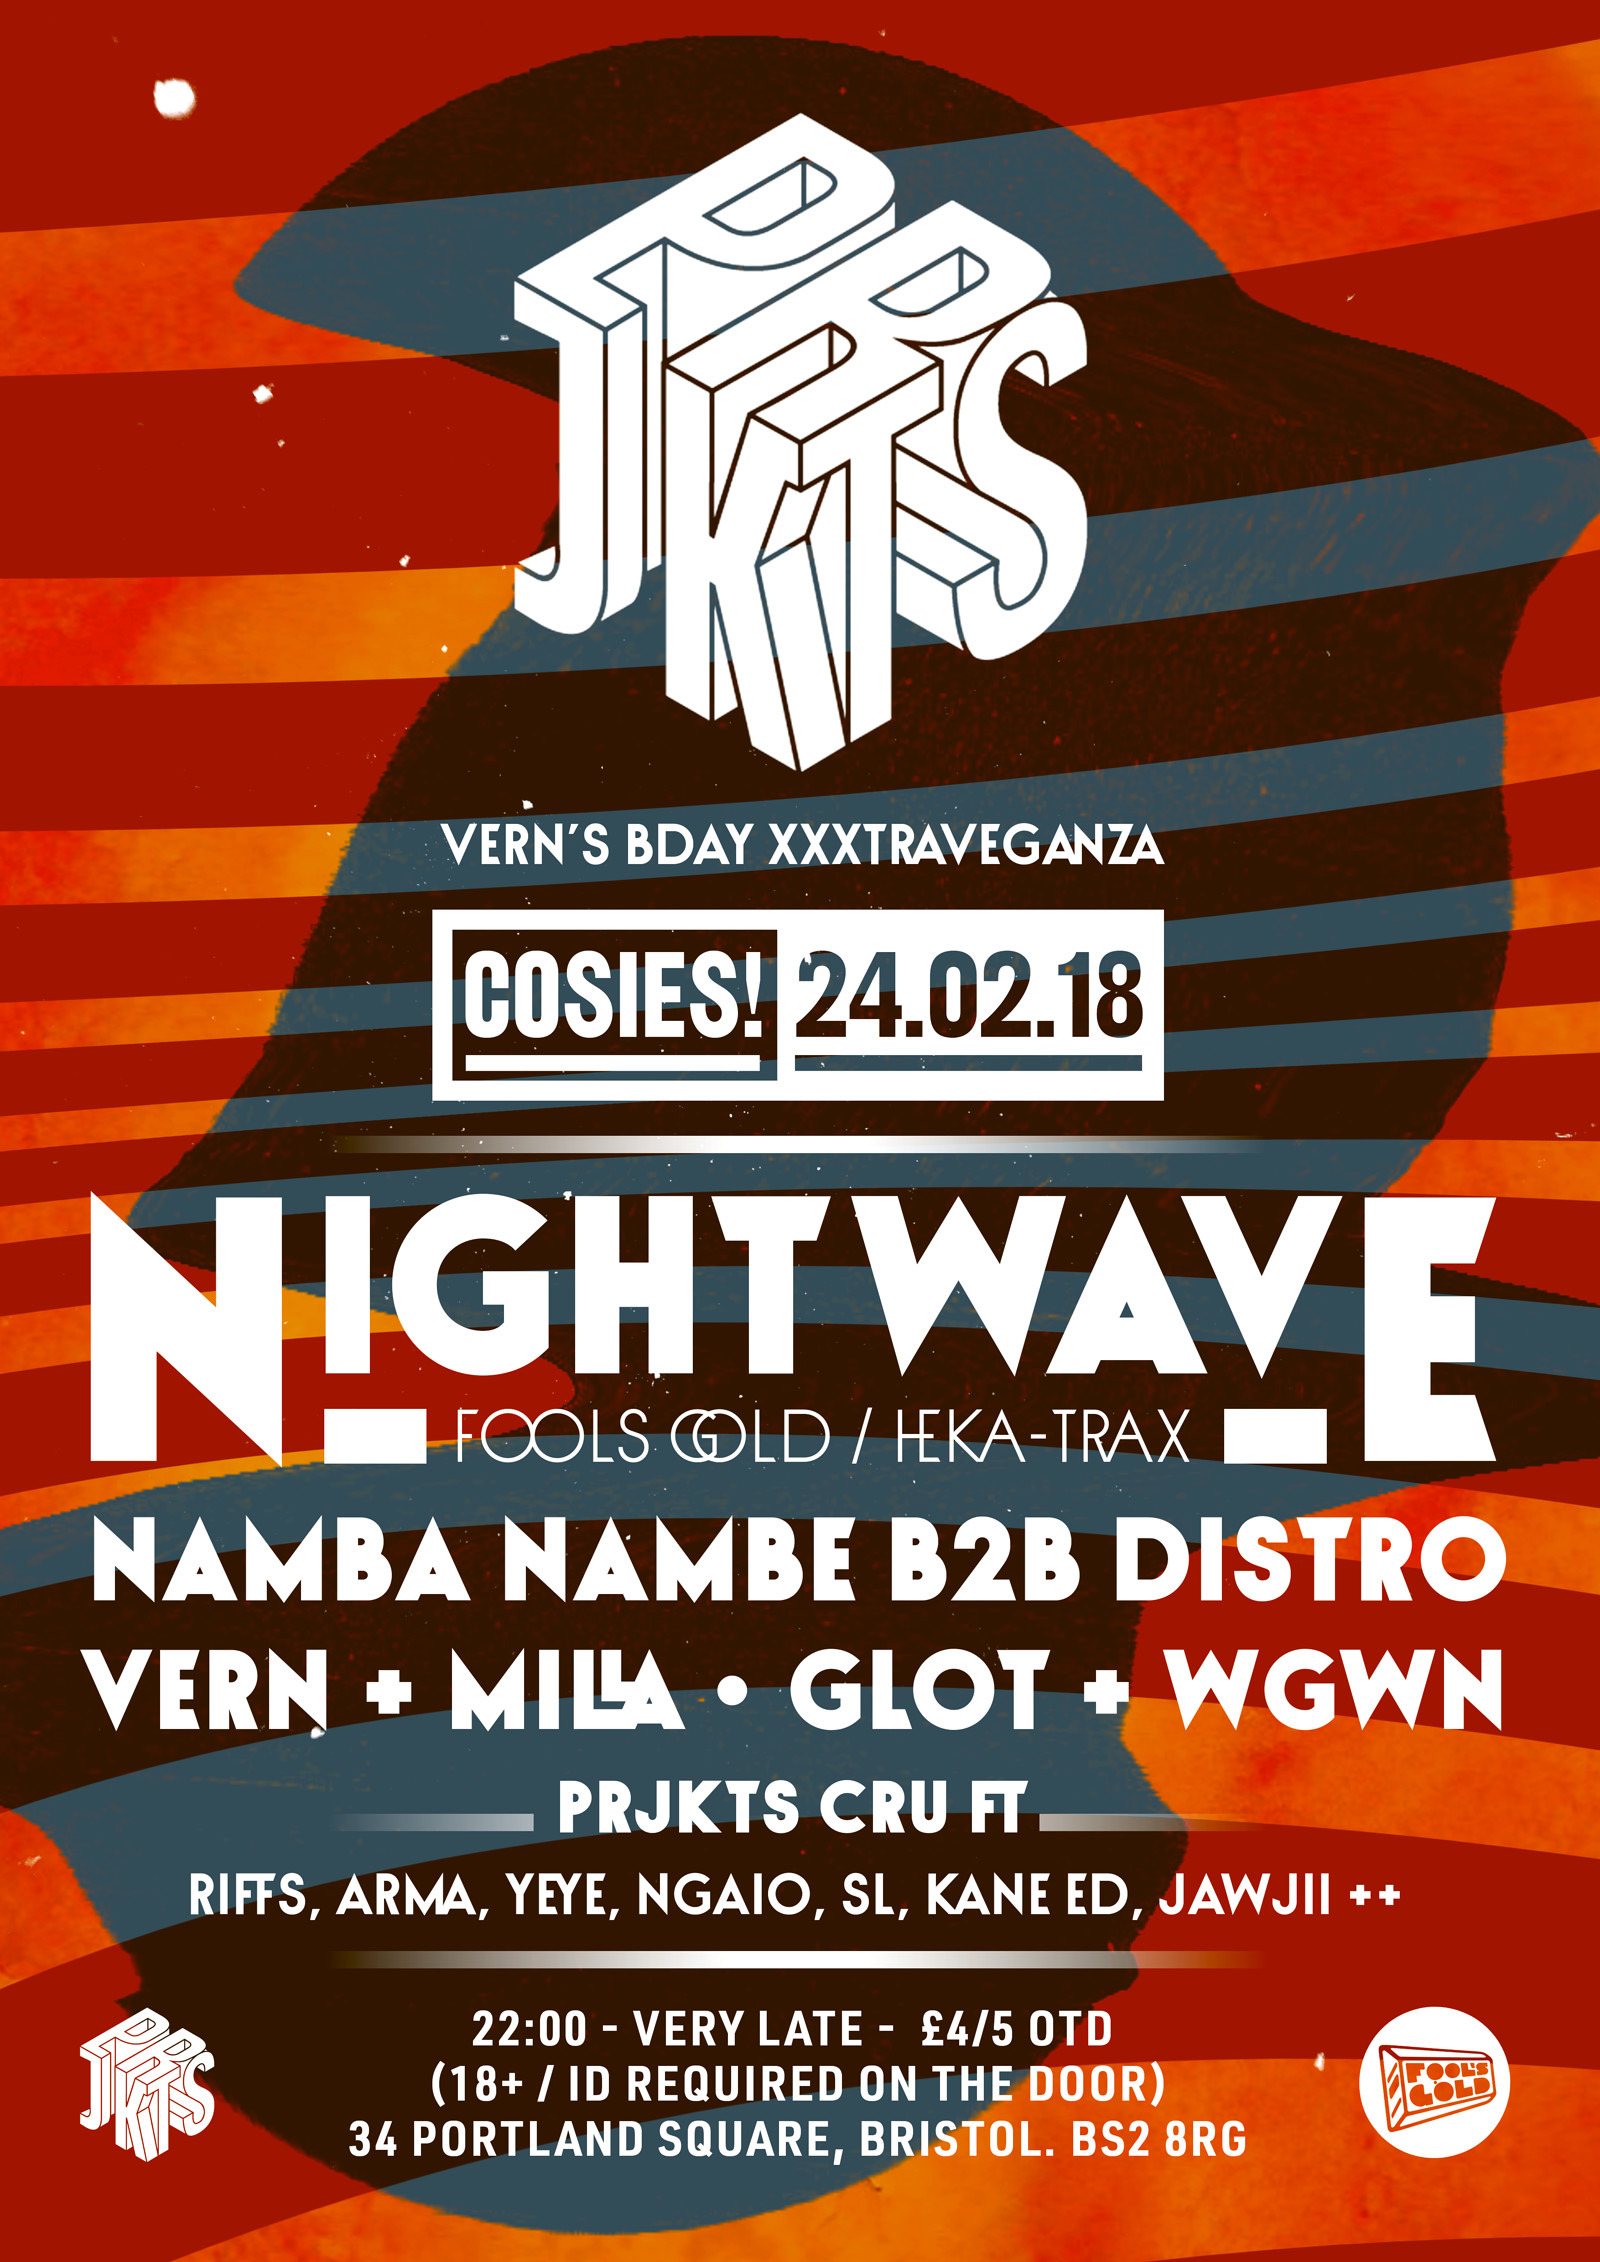 Prjkts presents ≡ Nightwave + Vern's Bday soirée at Cosies